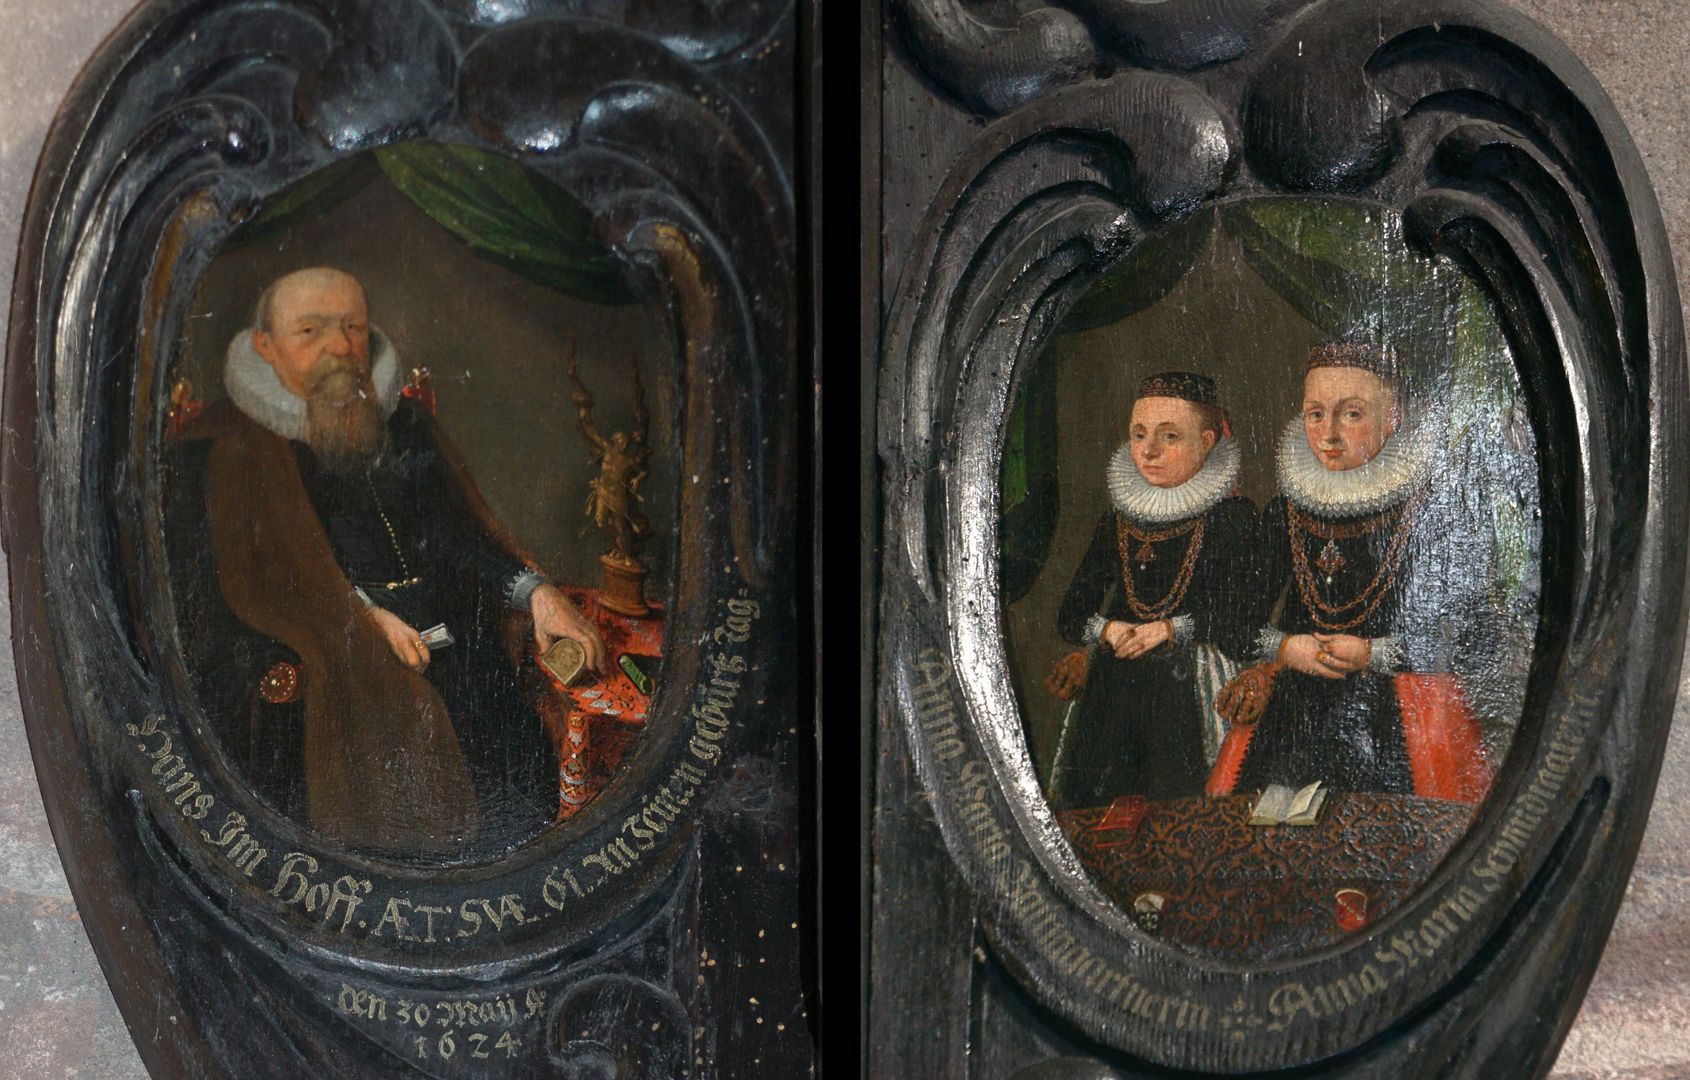 Dürersche Stiftungstafel seitliche Kartuschen: links Hans Imhoff (1563-1629) / rechts seine beiden Frauen Anna Maria, geb. Paumgartner und Anna Maria, geb. Schmidmayer